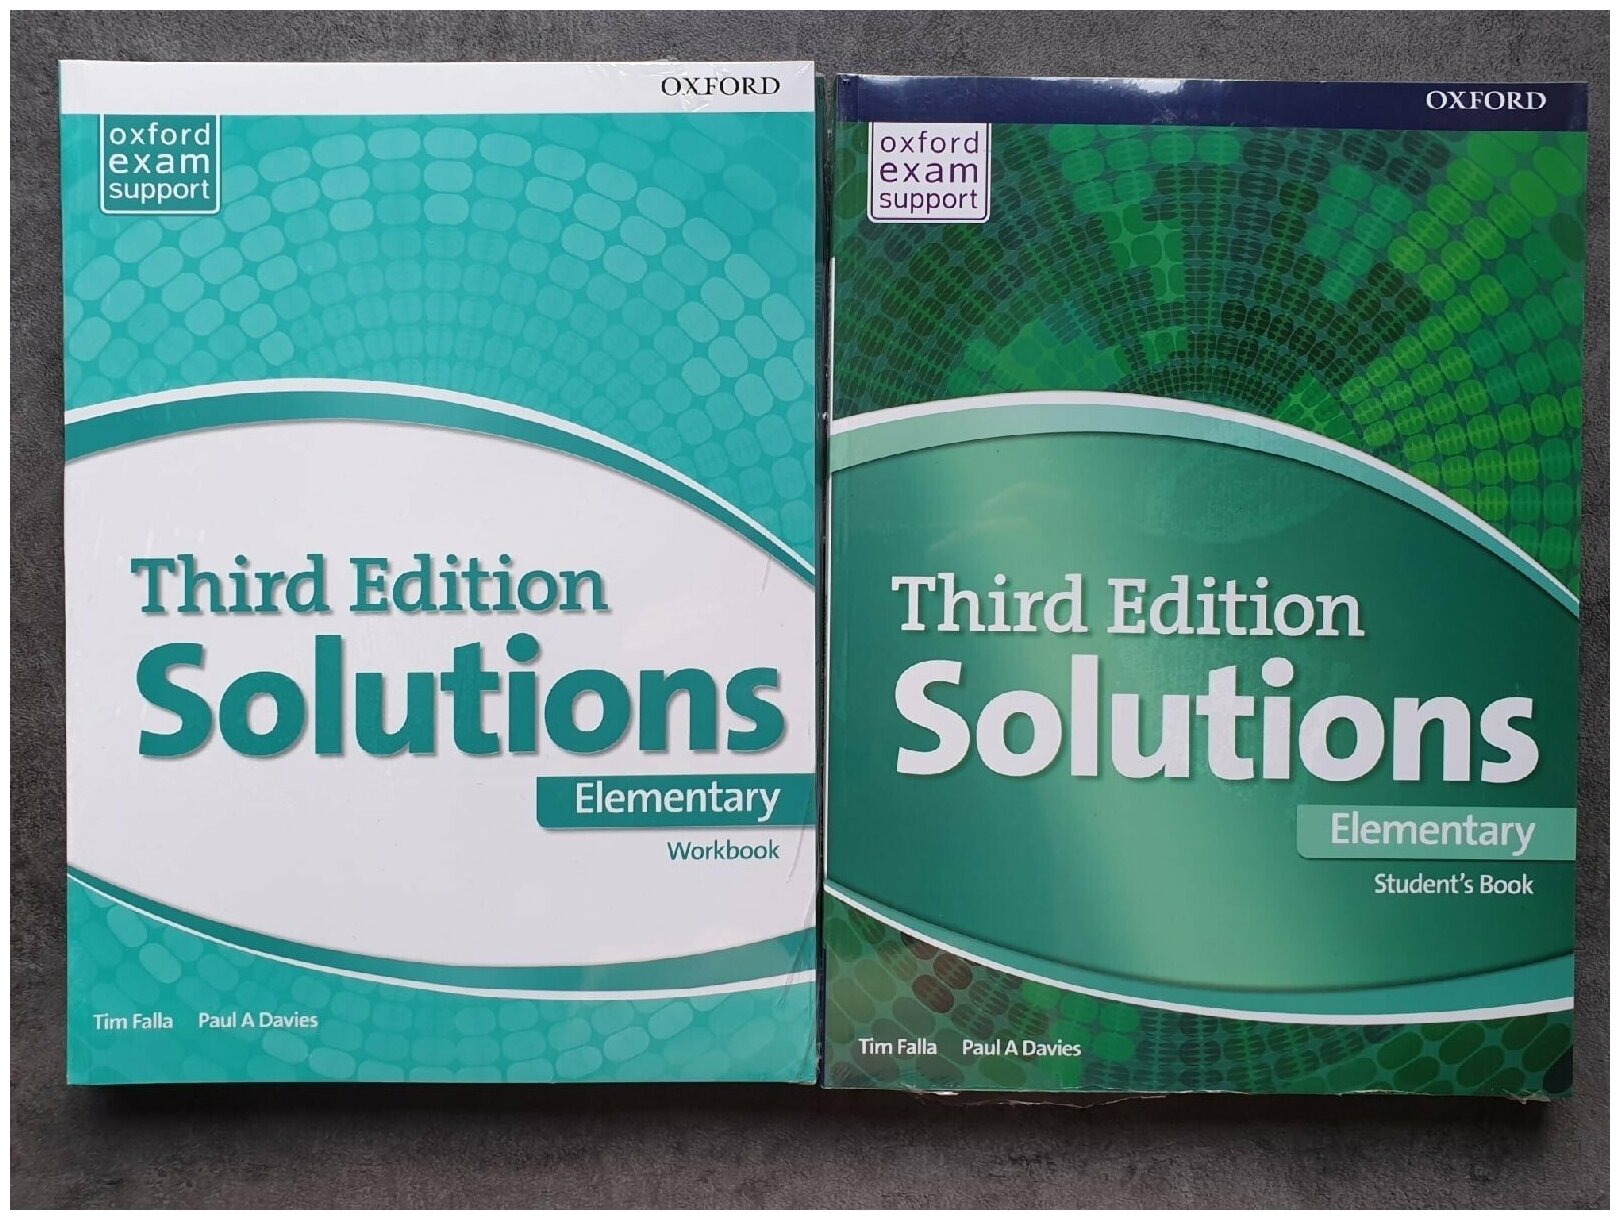 Комплект Solutions Third Edition Elementary: Student's Book and Workbook (Учебник и рабочая тетрадь, 2 книги) + CD-диск. Oxford. Без кода к электронной версии книг